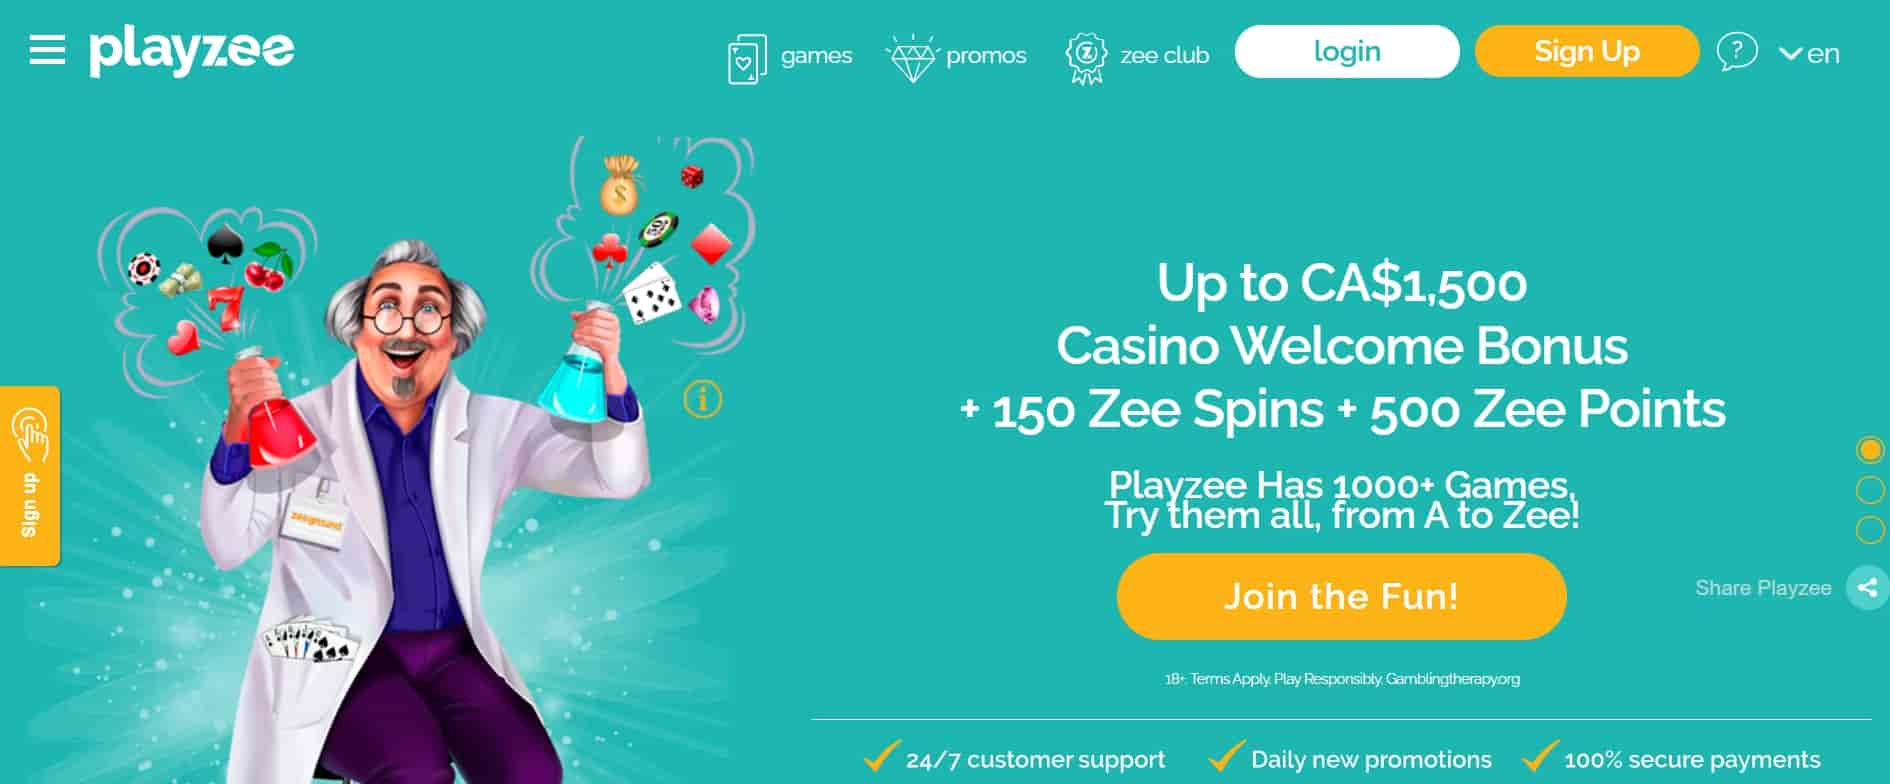 Playzee online casino Canada